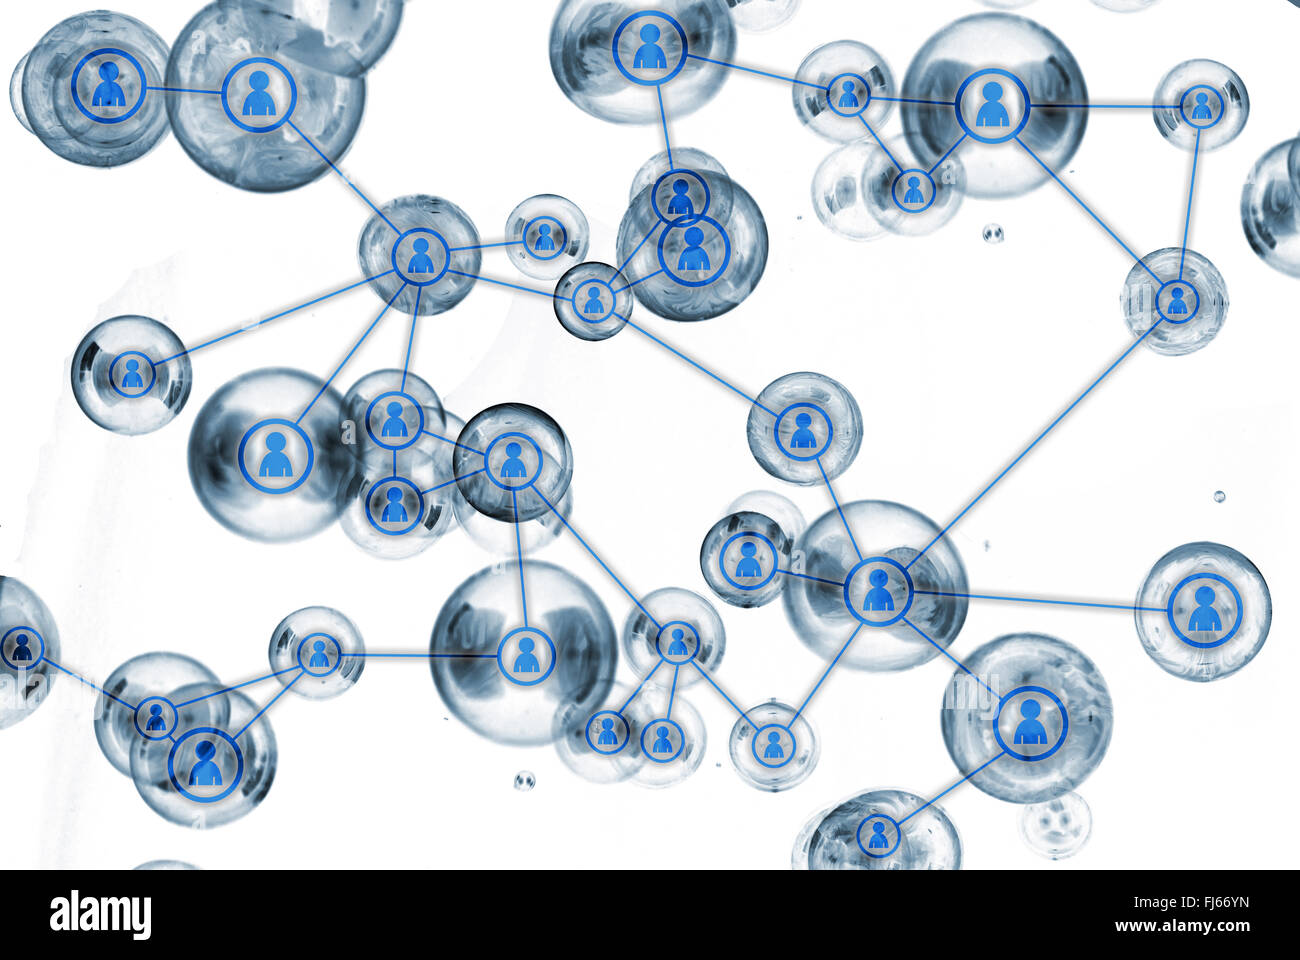 Social-Media-Netzwerk-Konzept - verbundenen Kreisen Stockfoto